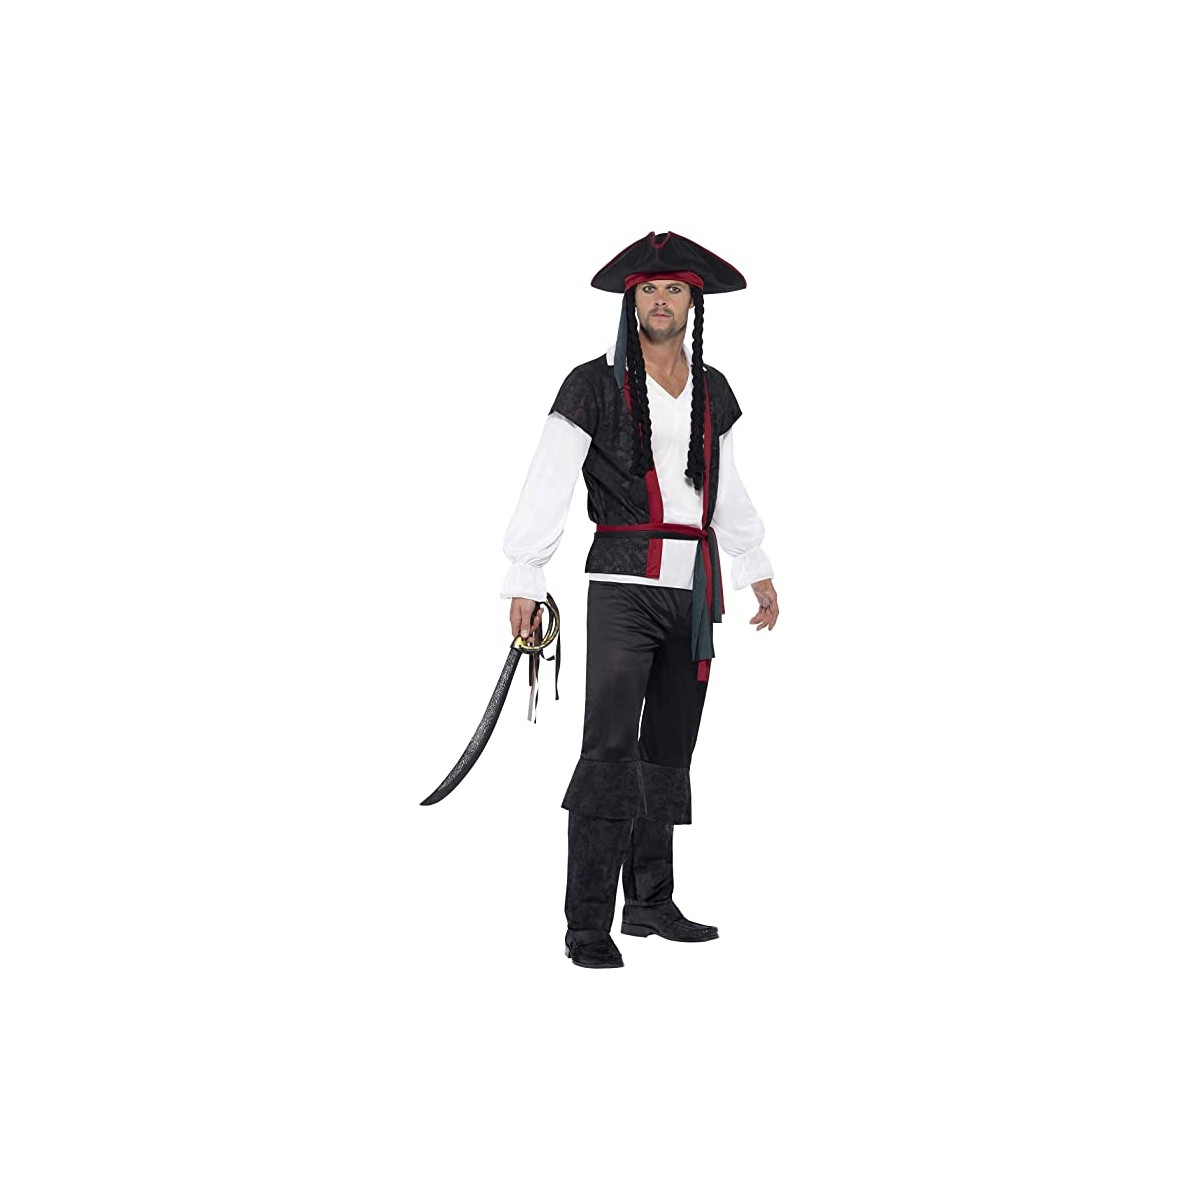 Costume Capitano dei pirati, Nero, completo, per adulti